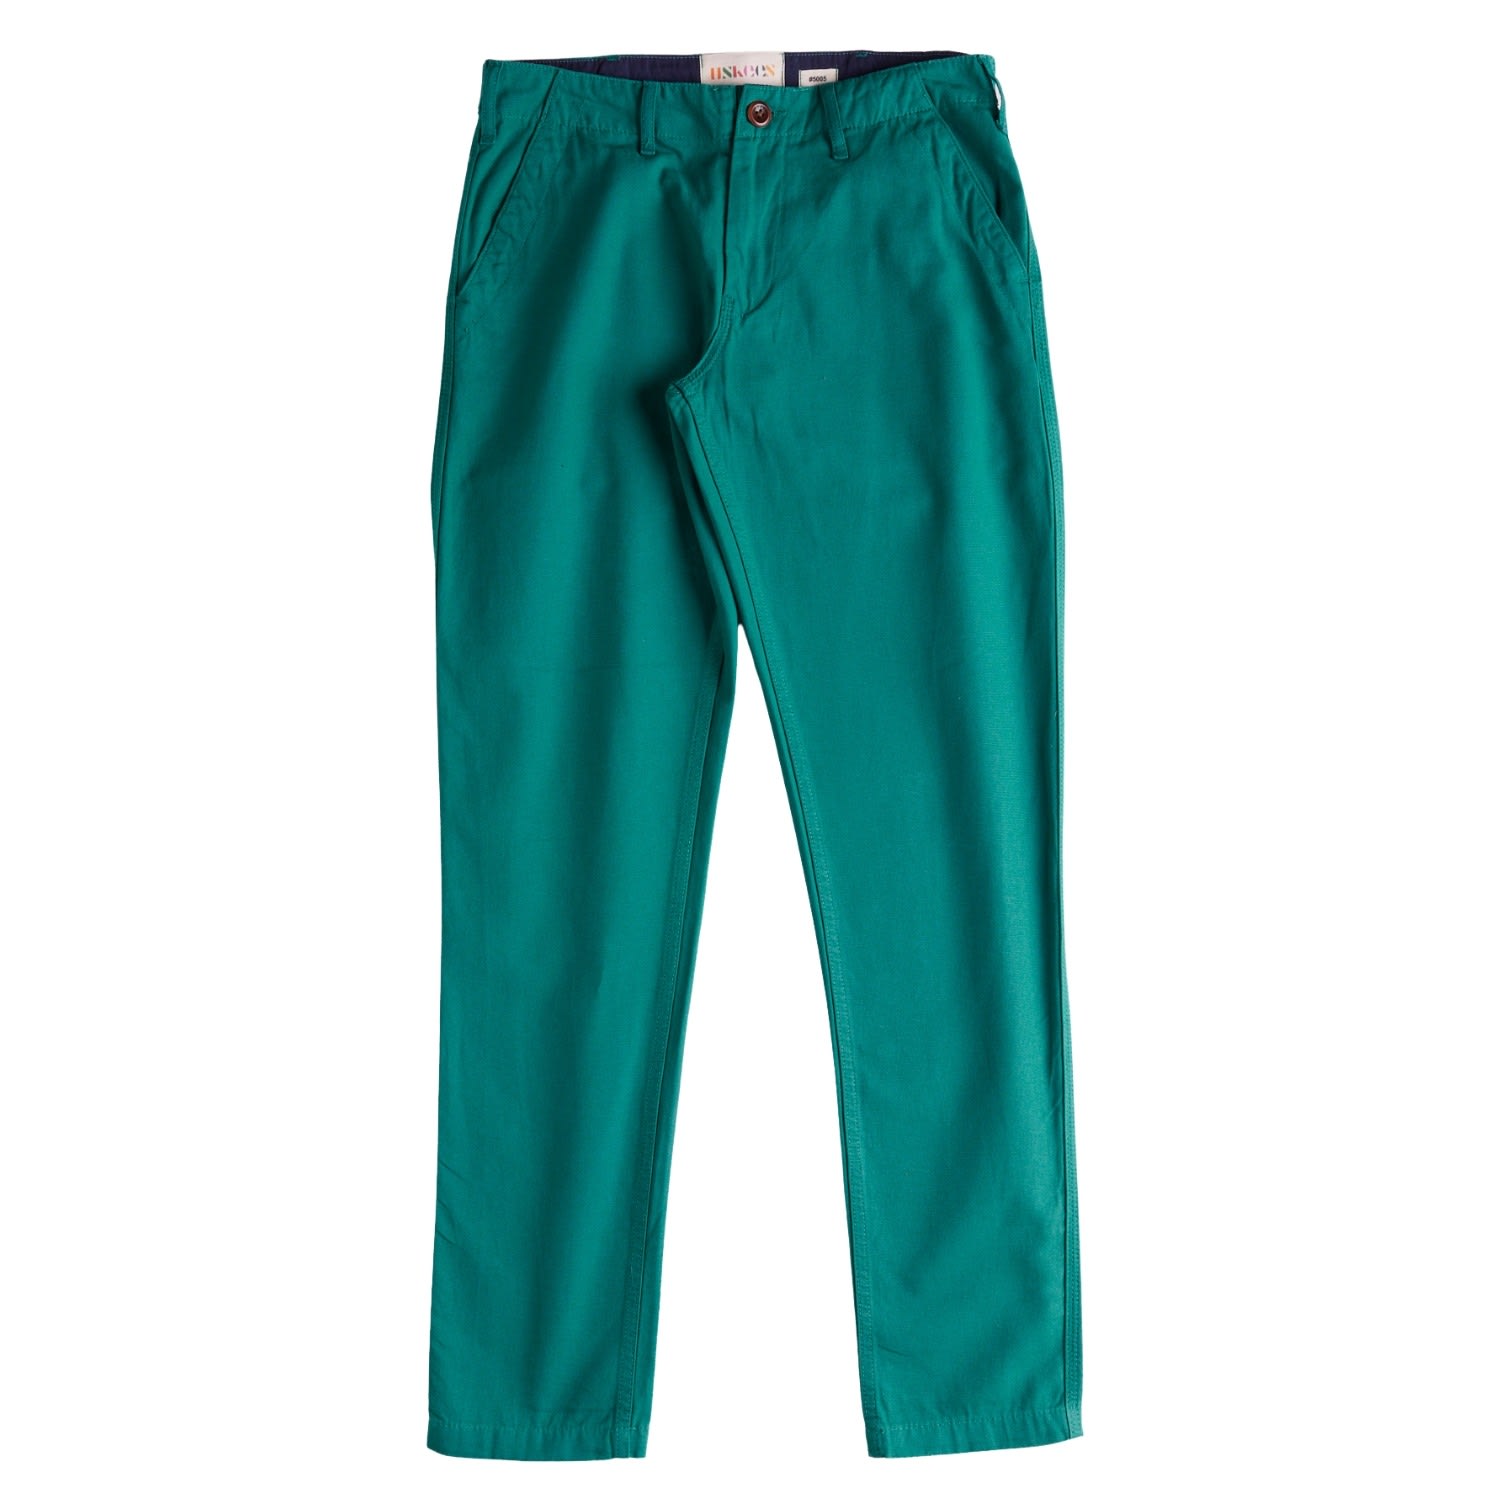 Uskees Men's 5005 Workwear Pants - Foam Green